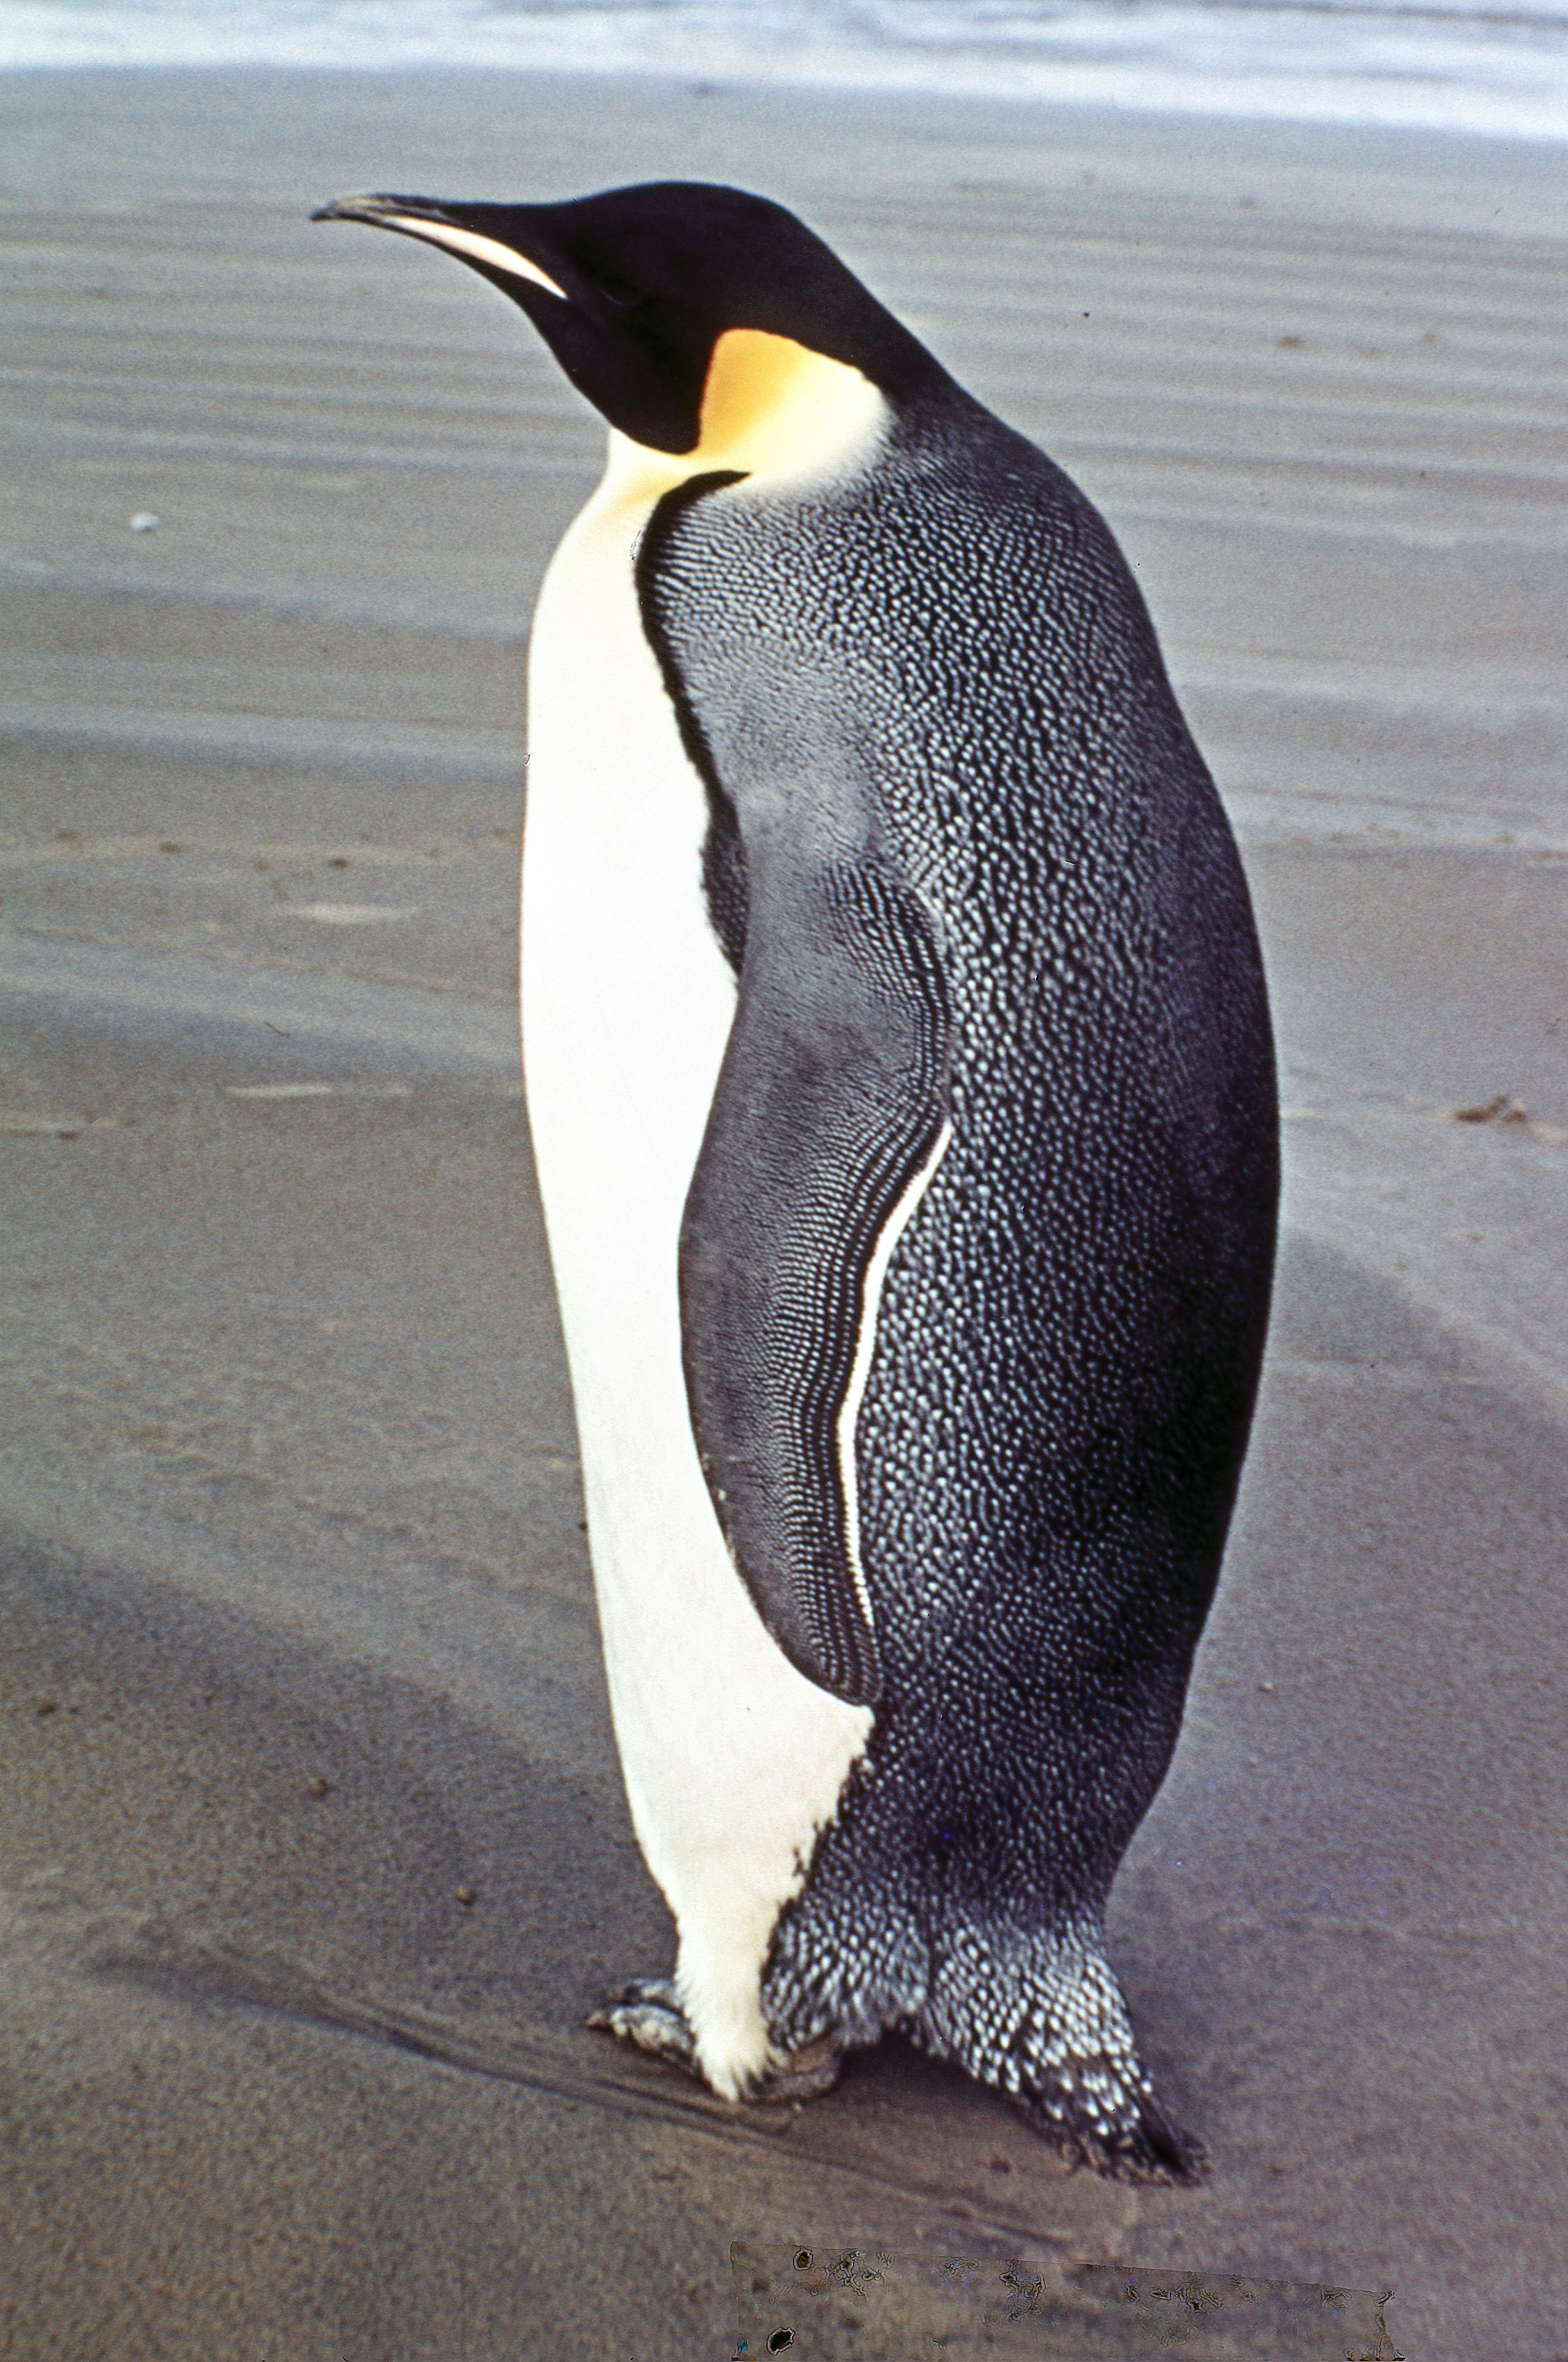 Emperor penguin | New Zealand Birds Online